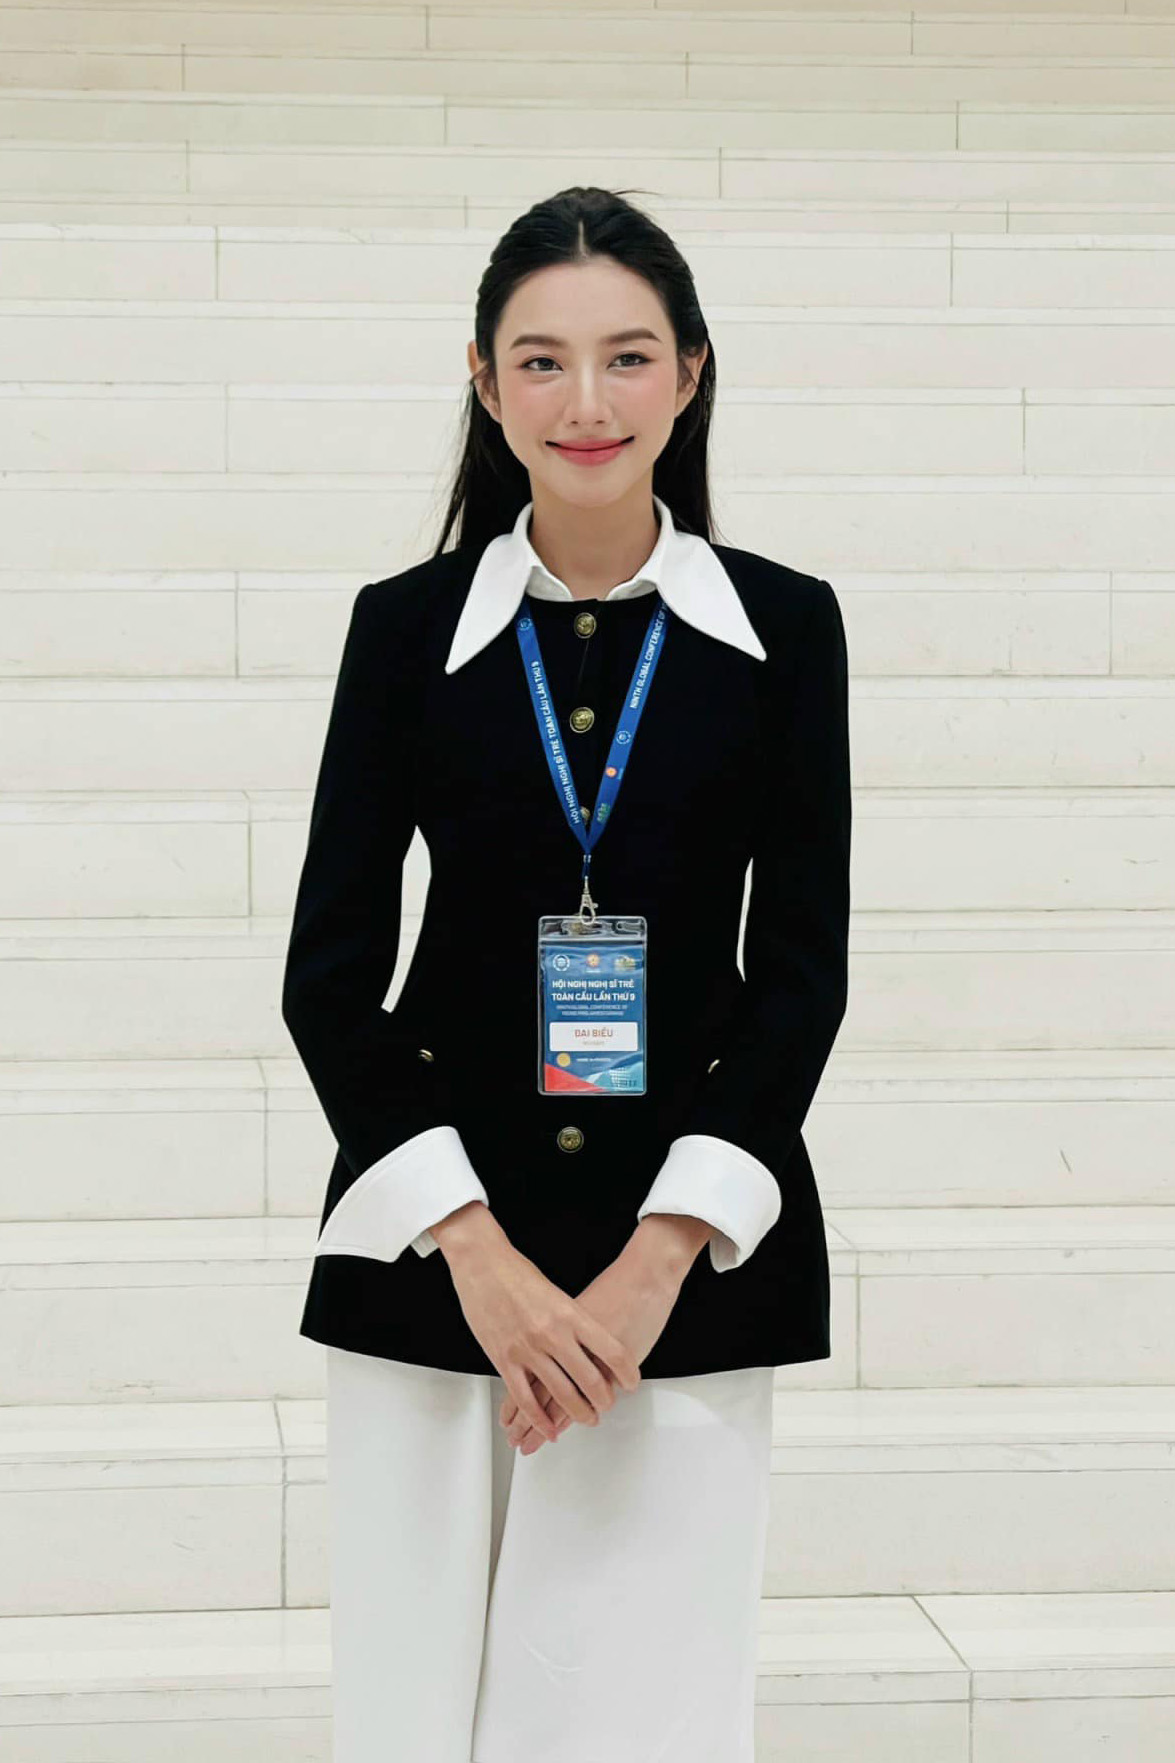  Hoa hậu Nguyễn Thúc Thùy Tiên dẫn đầu bảng xếp hạng tháng 8 với con số tương tác khủng 16.615.676